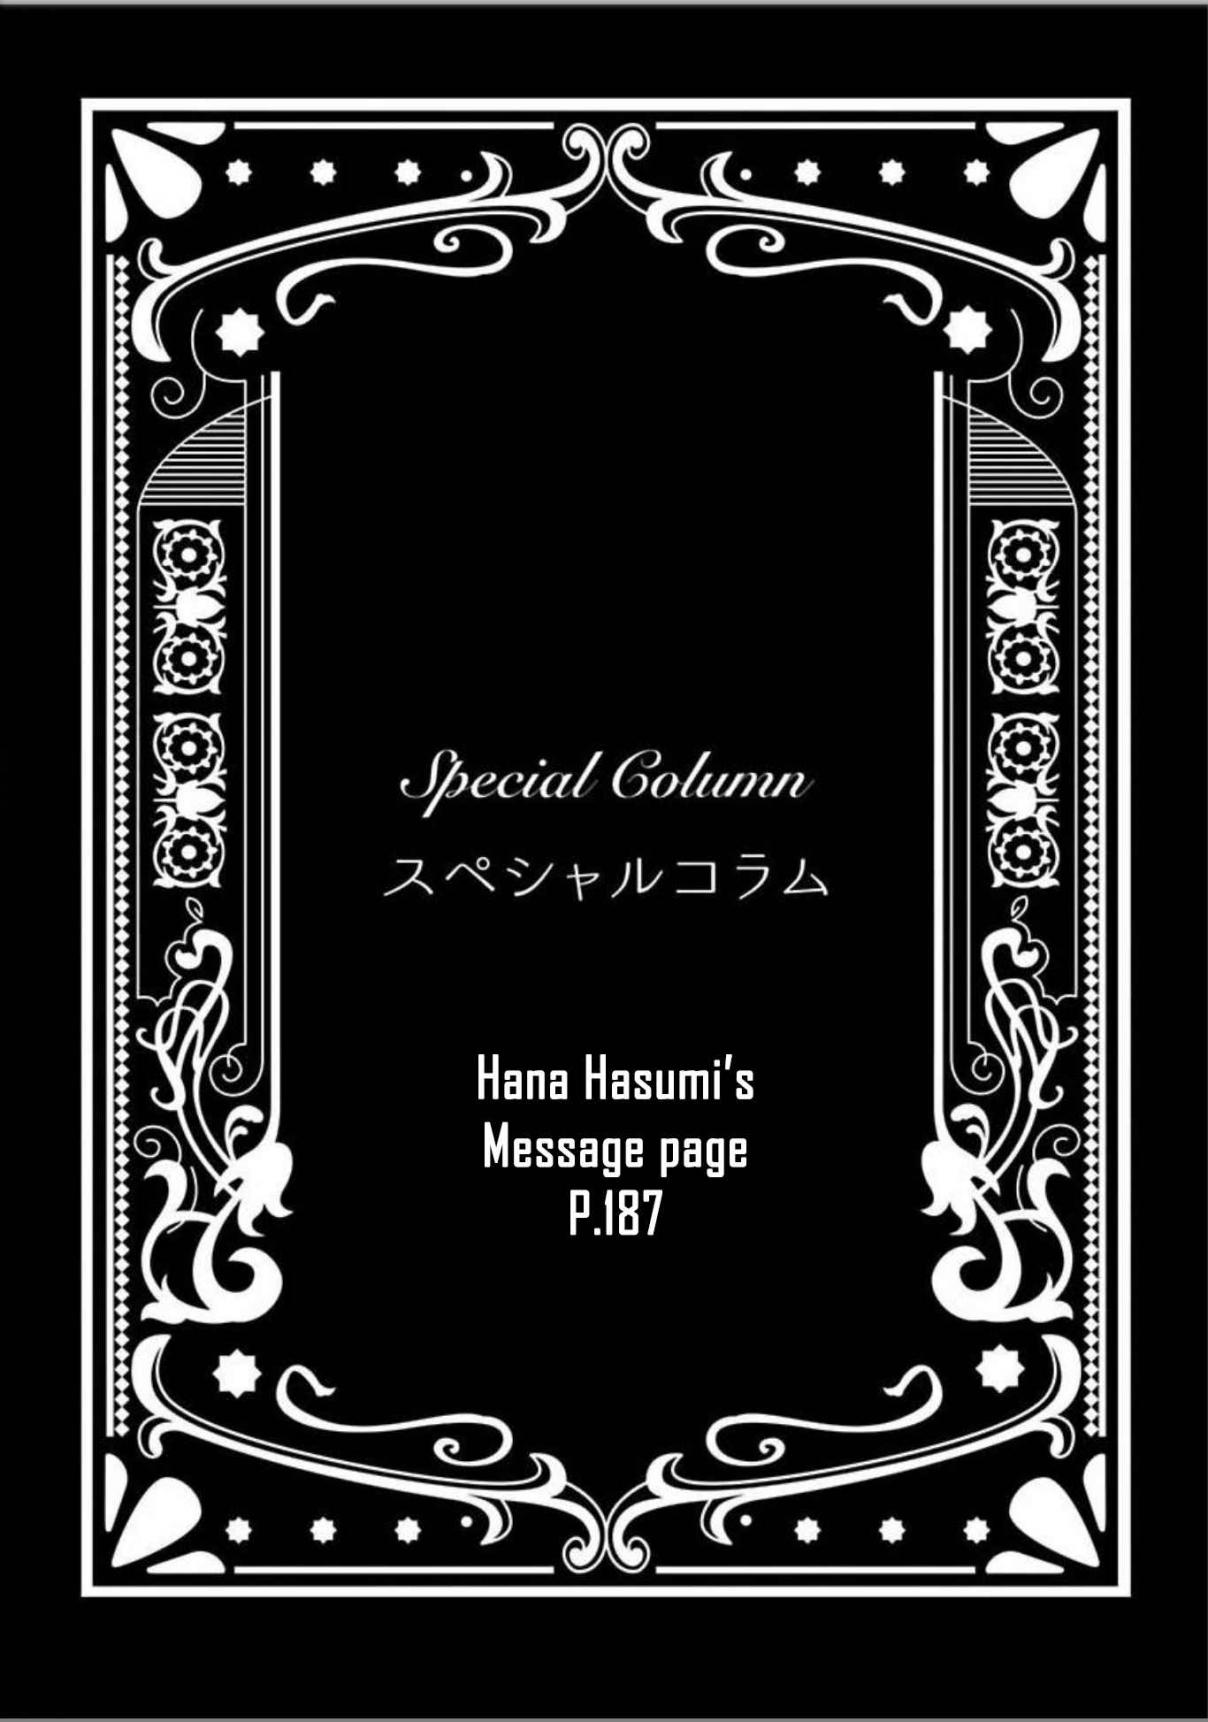 Ayashi no Hakoniwa ni Ukabu Tsuki Vol. 1 Ch. 6.8 Extra One Message